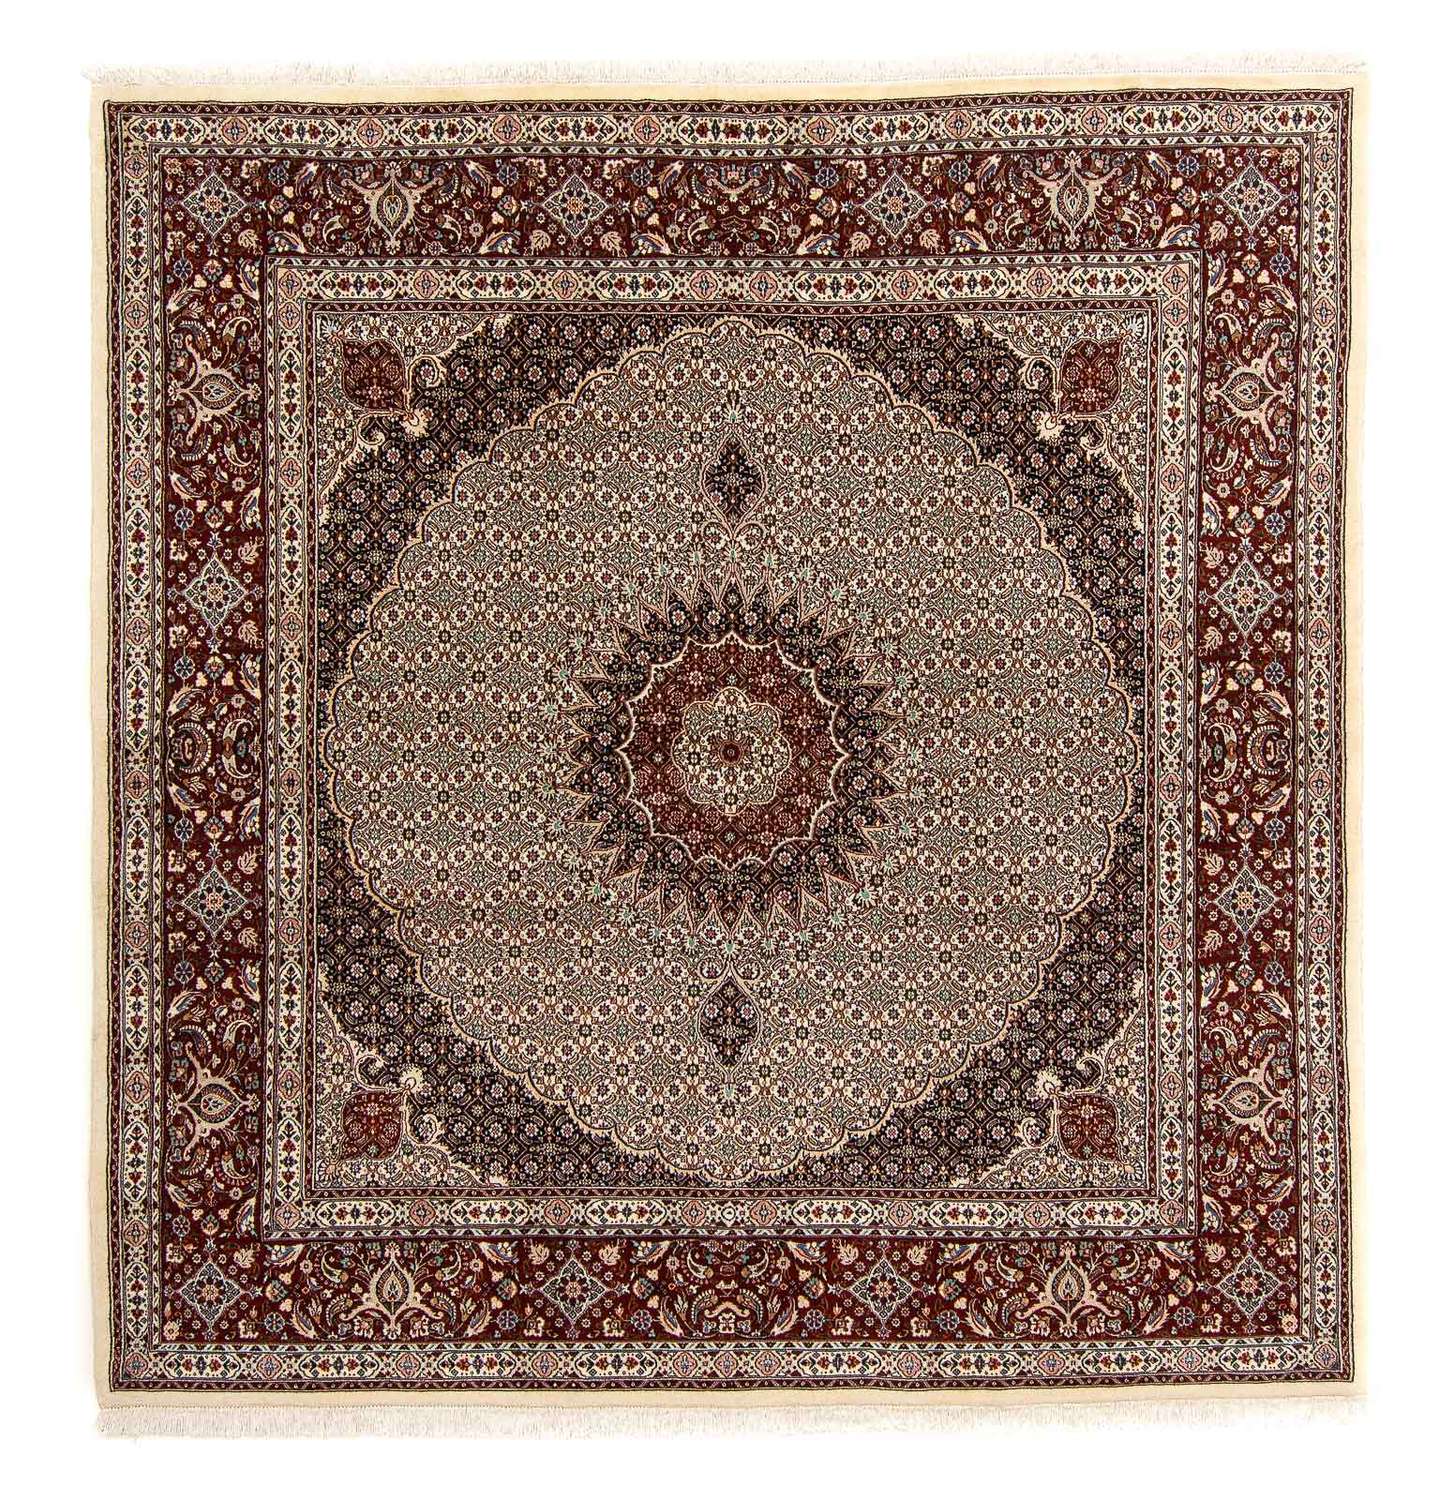 Dywan perski - Klasyczny kwadratowy  - 262 x 250 cm - jasnobrązowy